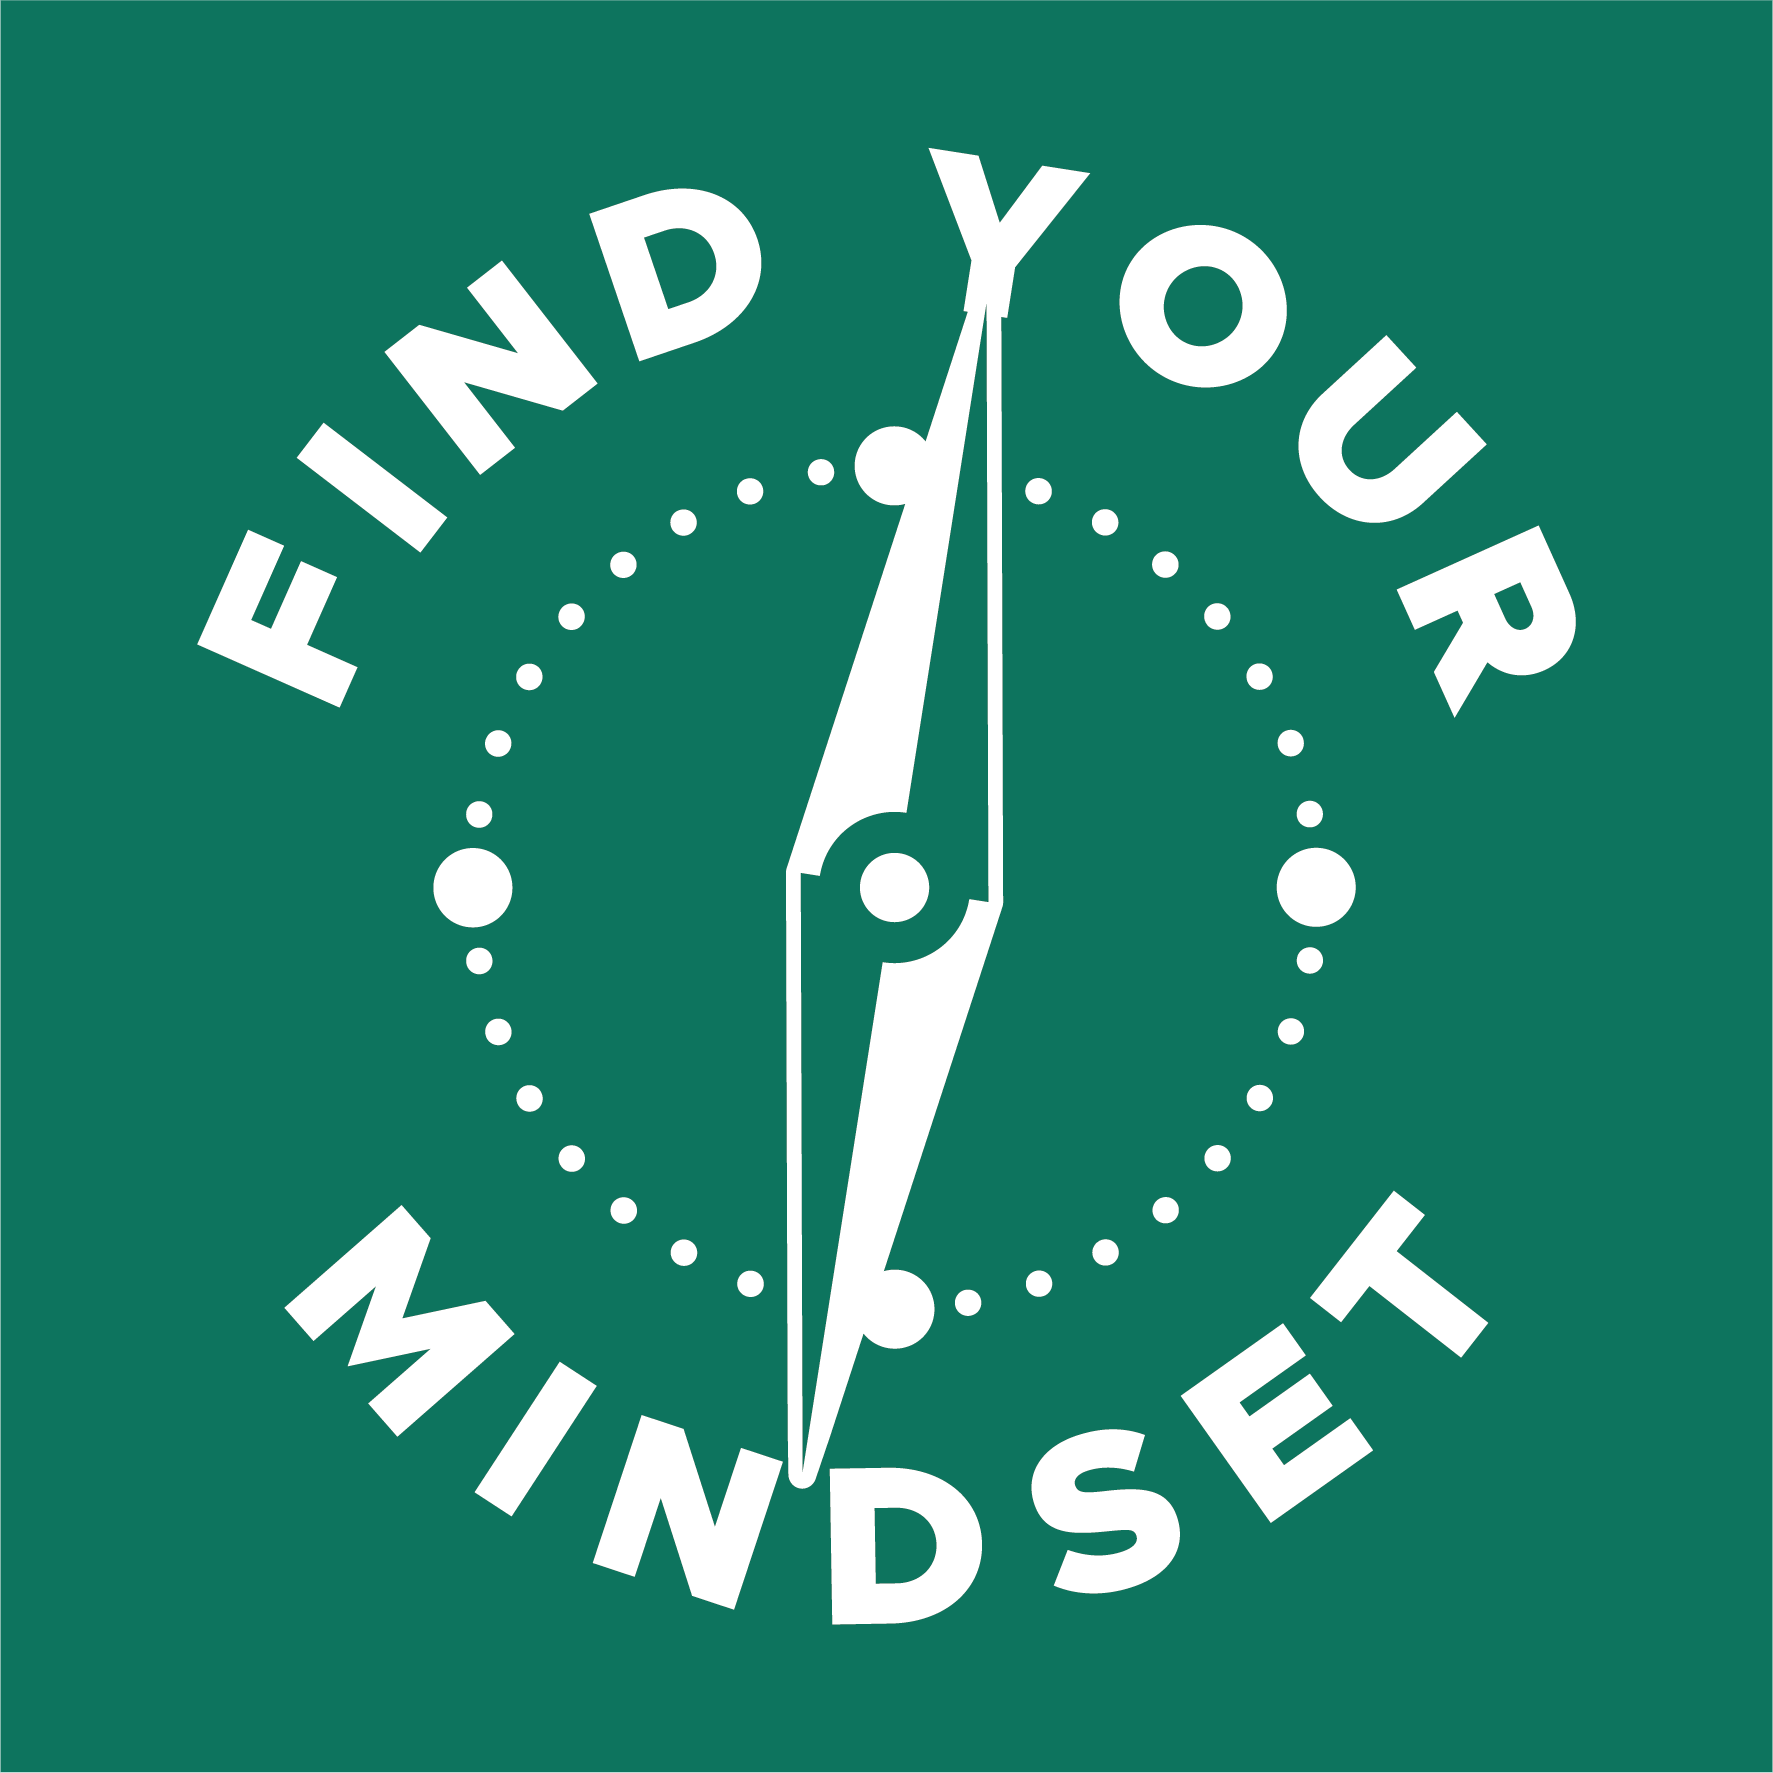 Find Your Mindset